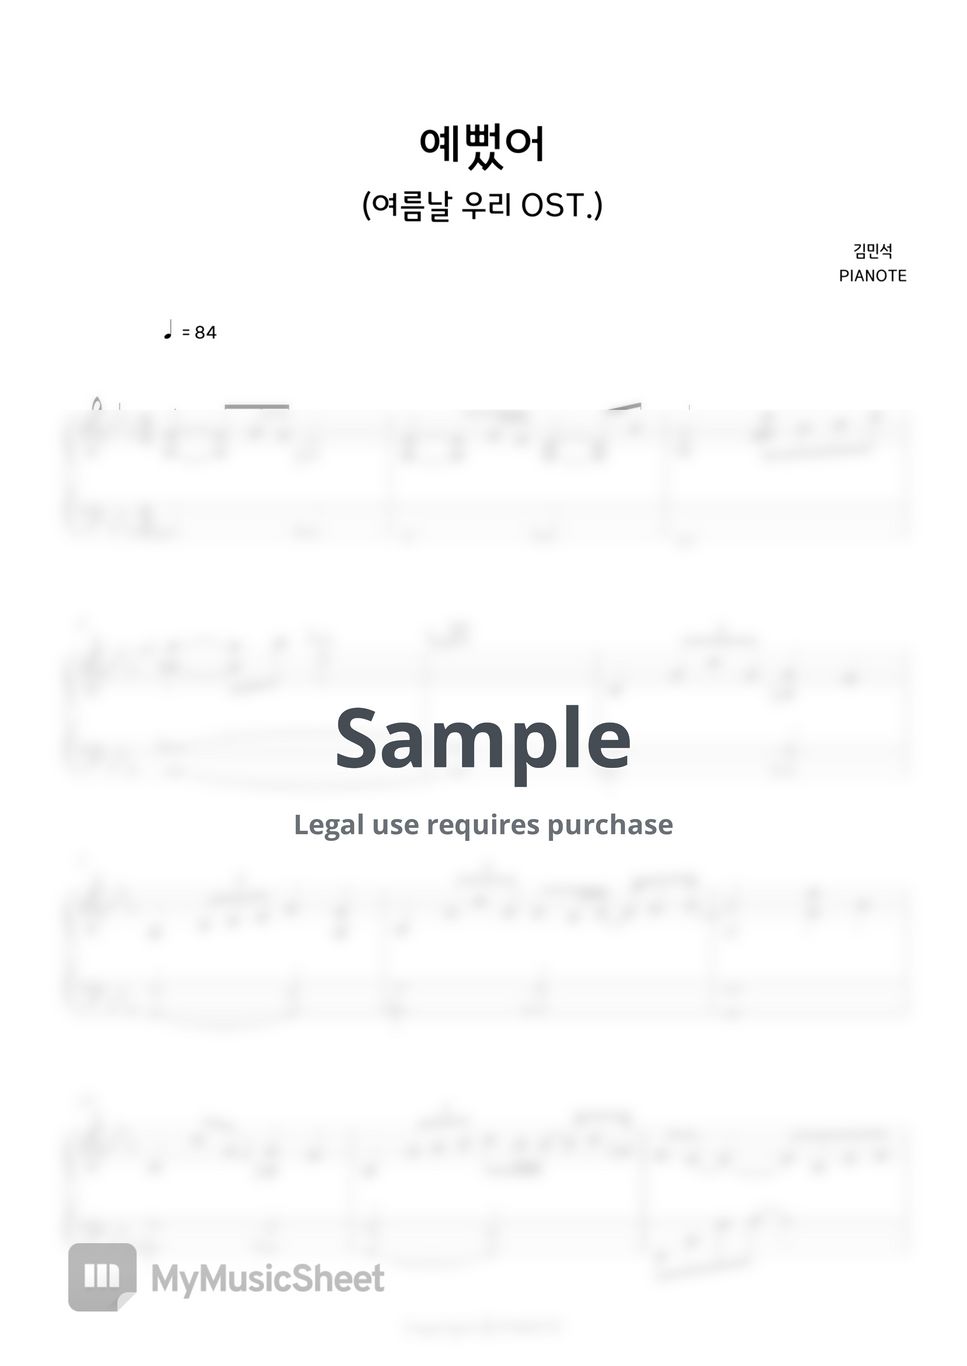 데이식스 - 예뻤어 (김민석 버전) by 피아노트PIANOTE